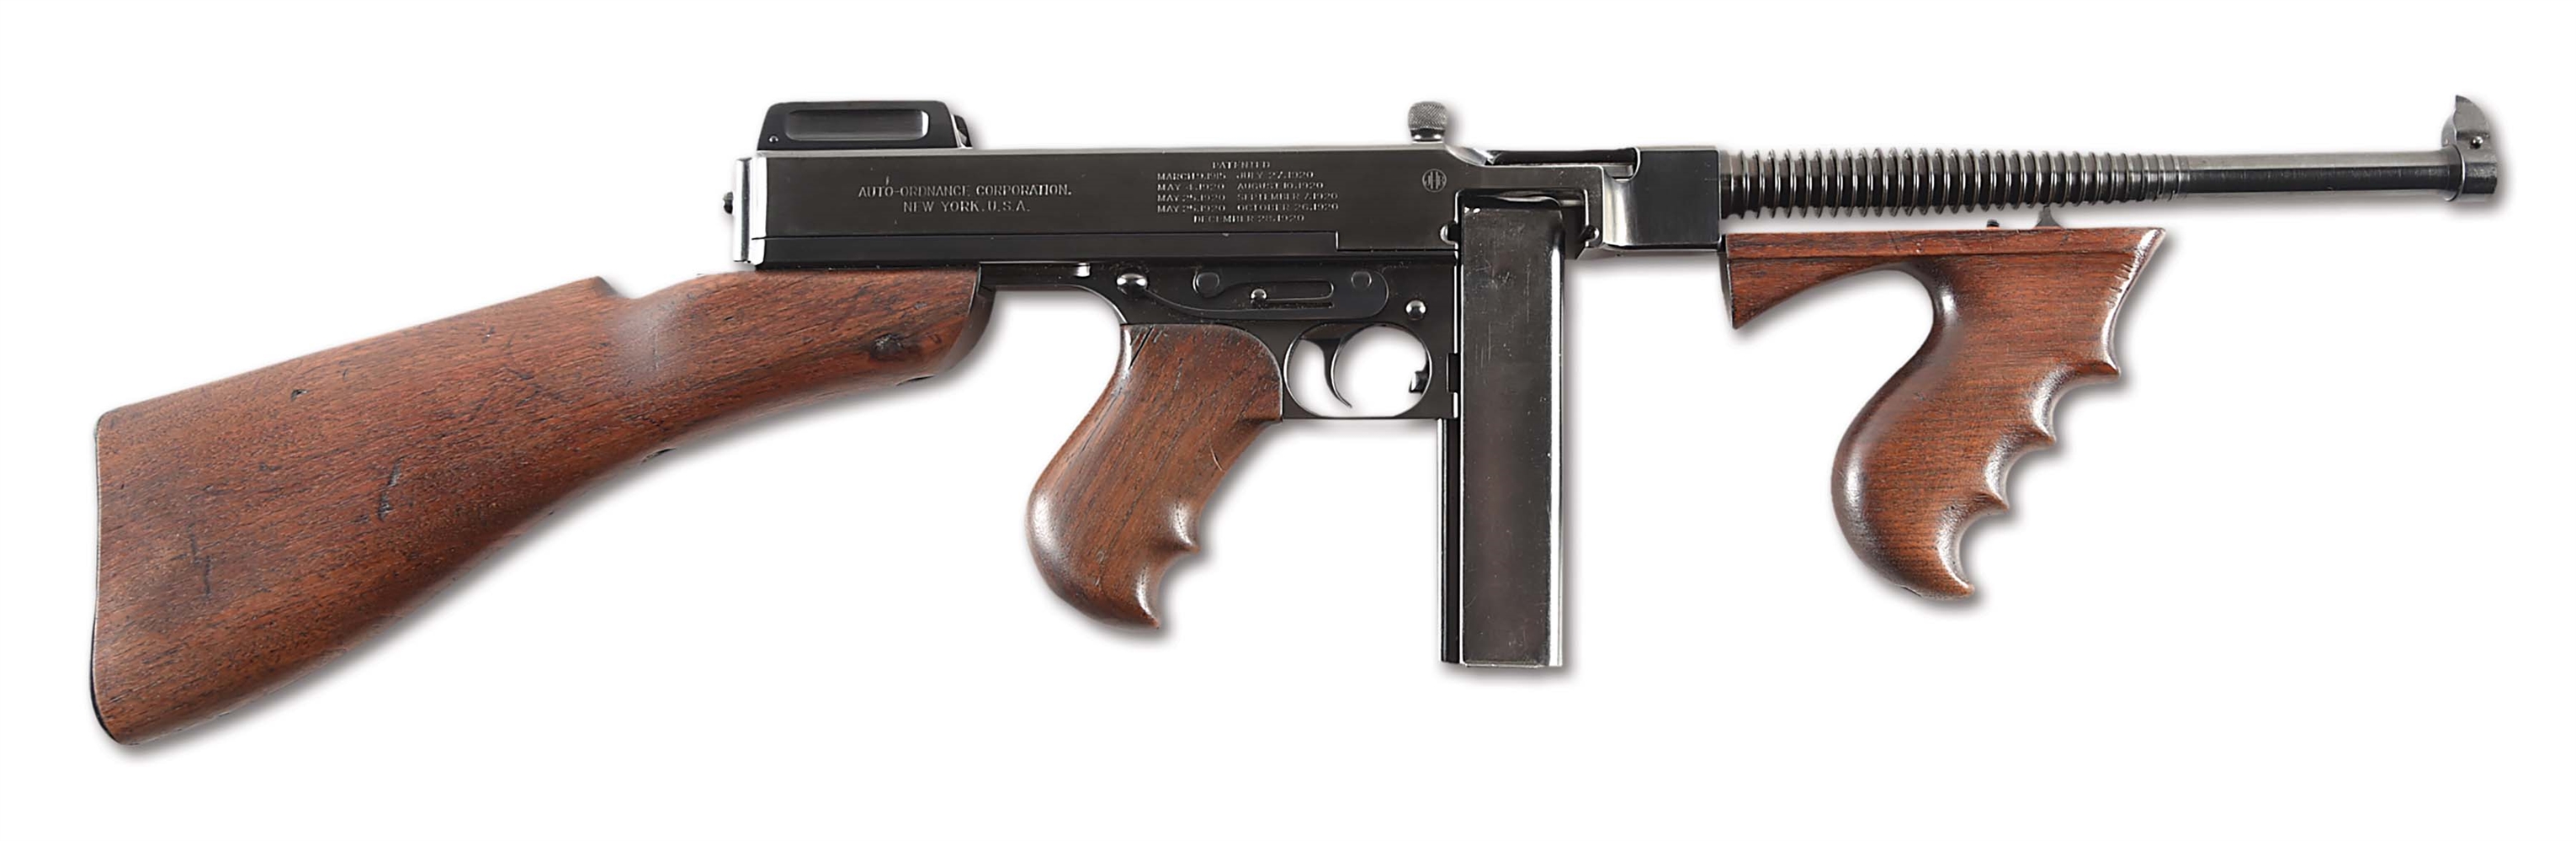 (N) BEAUTIFUL HIGH CONDITION COLT 1921A THOMPSON 1921 MACHINE GUN (CURIO AND RELIC).